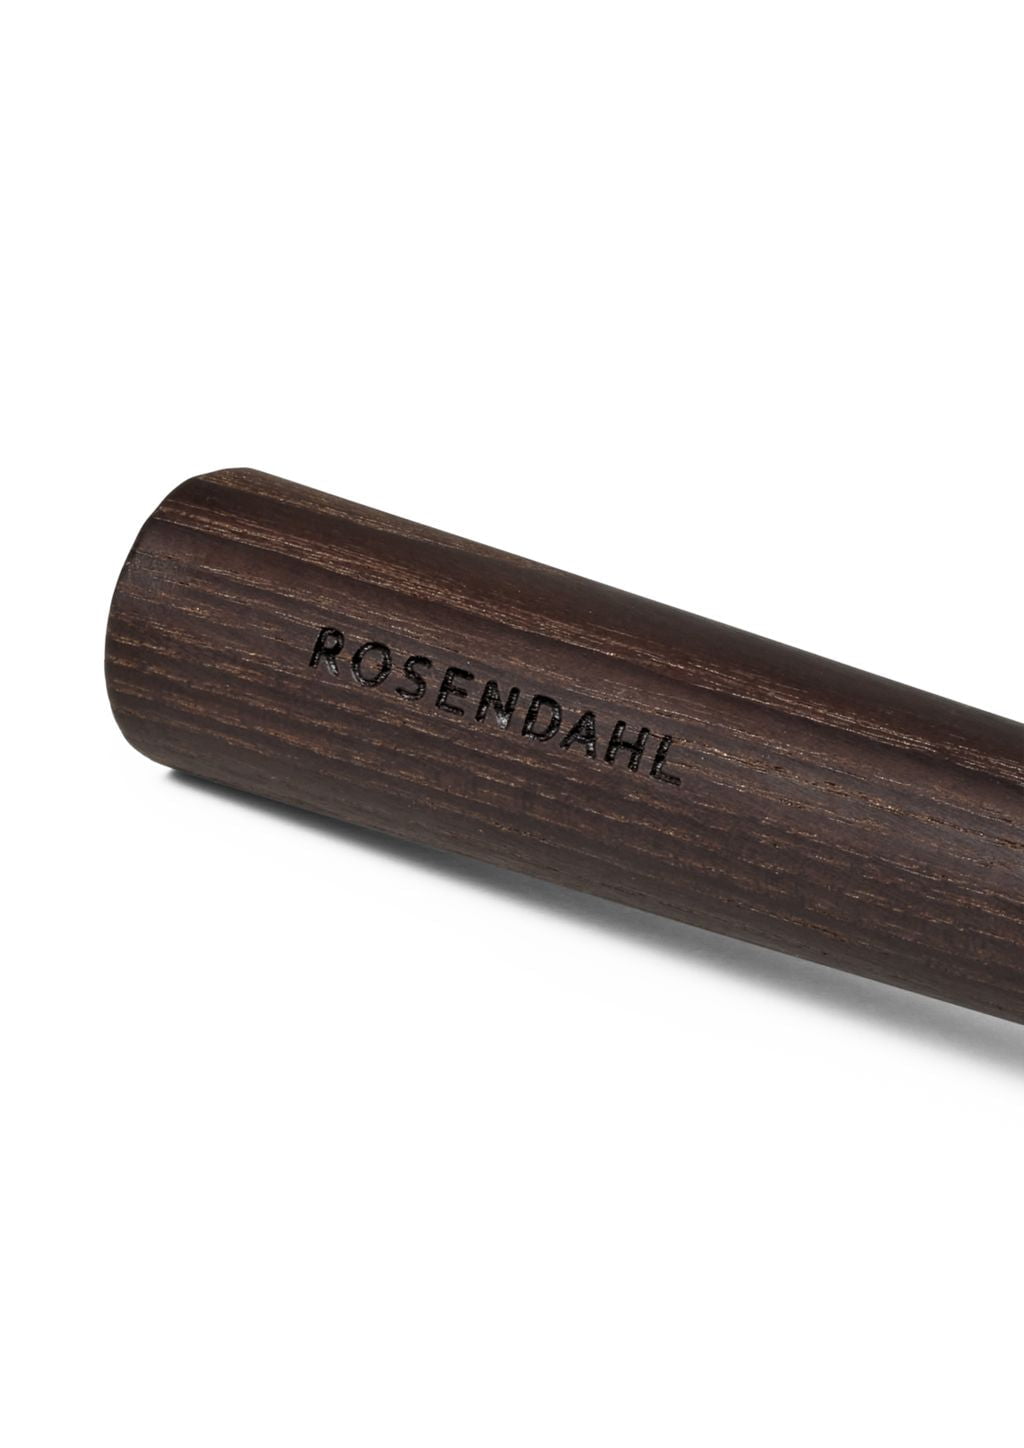 Rosendahl Rå Whisk, Thermoasche/Waffe Metallic